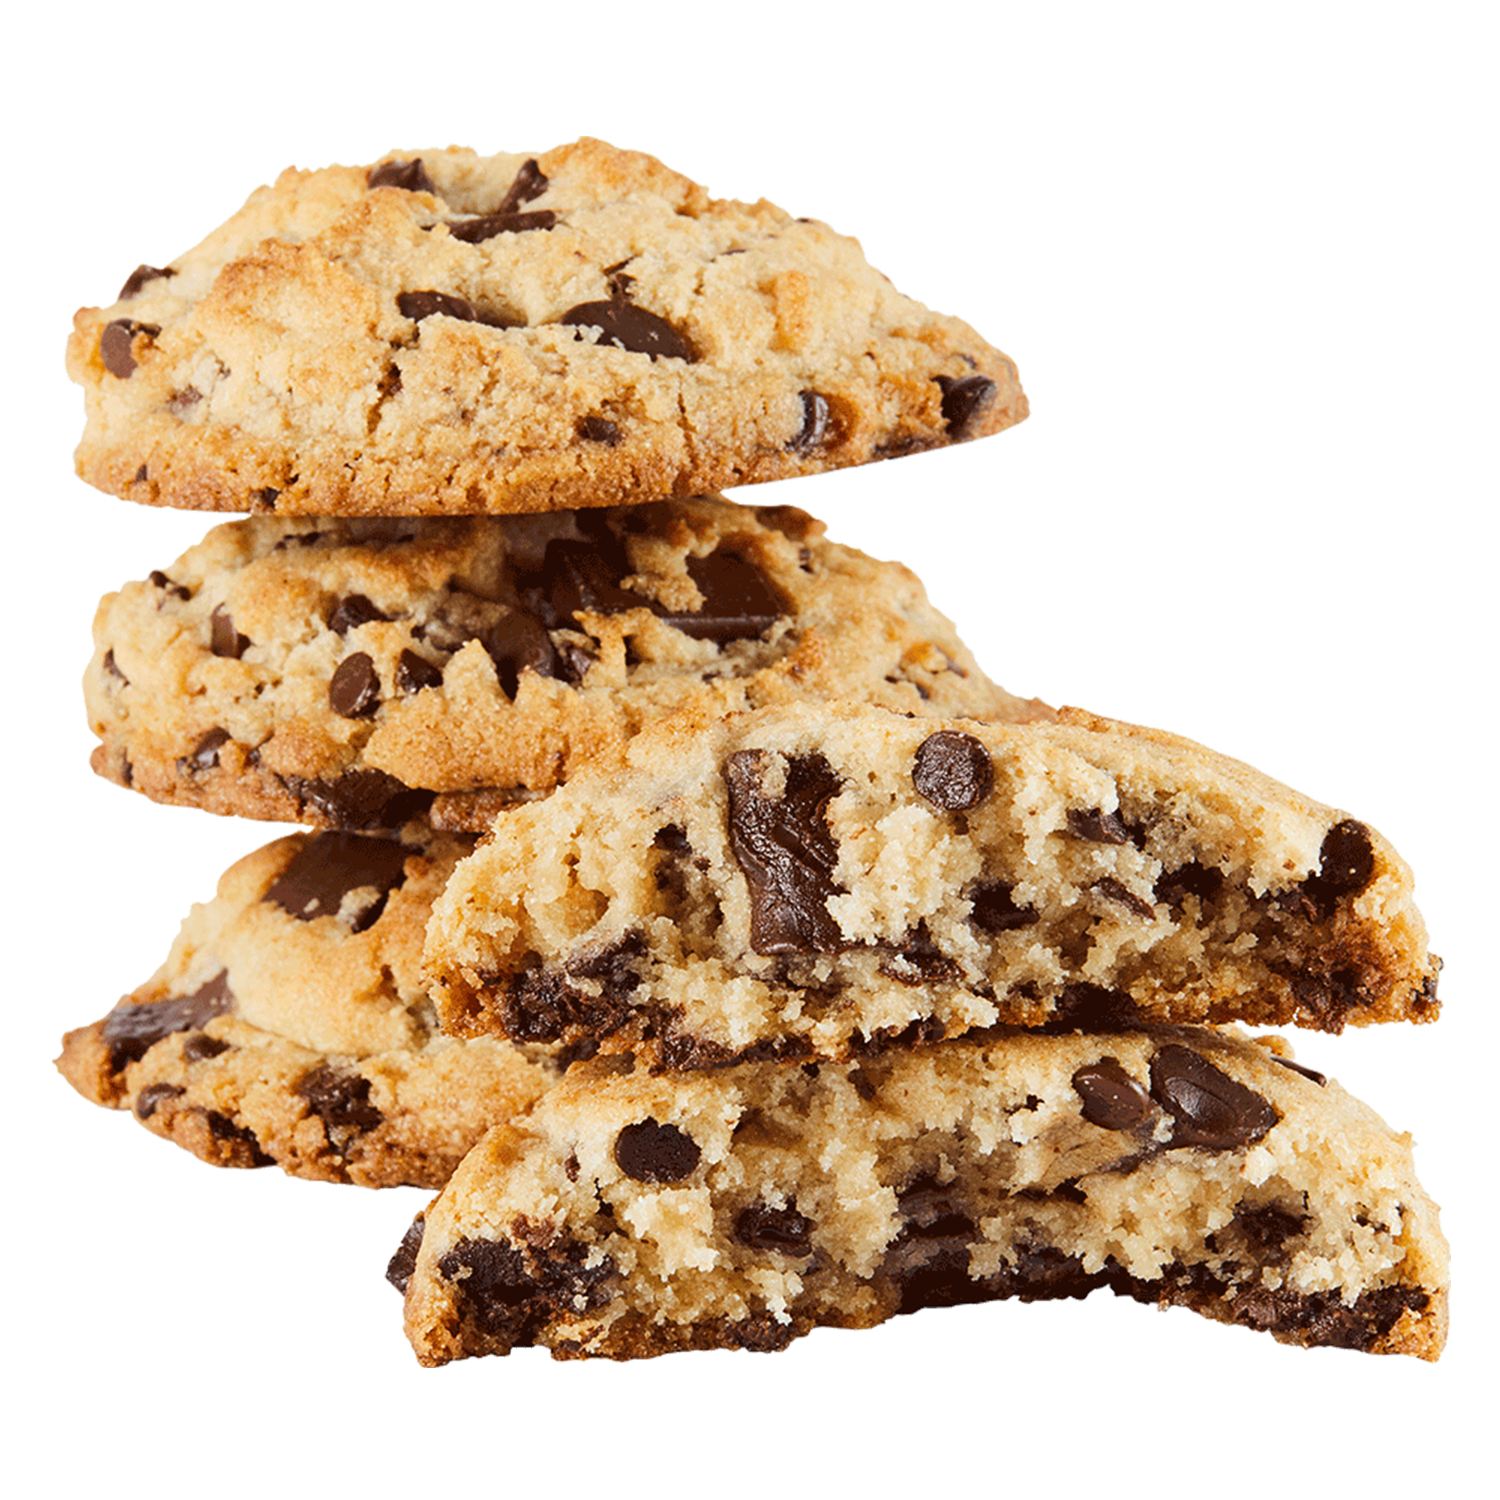 Chocolate Chip Cookies - Vegan, Gluten & Nut Free | Dana's Bakery